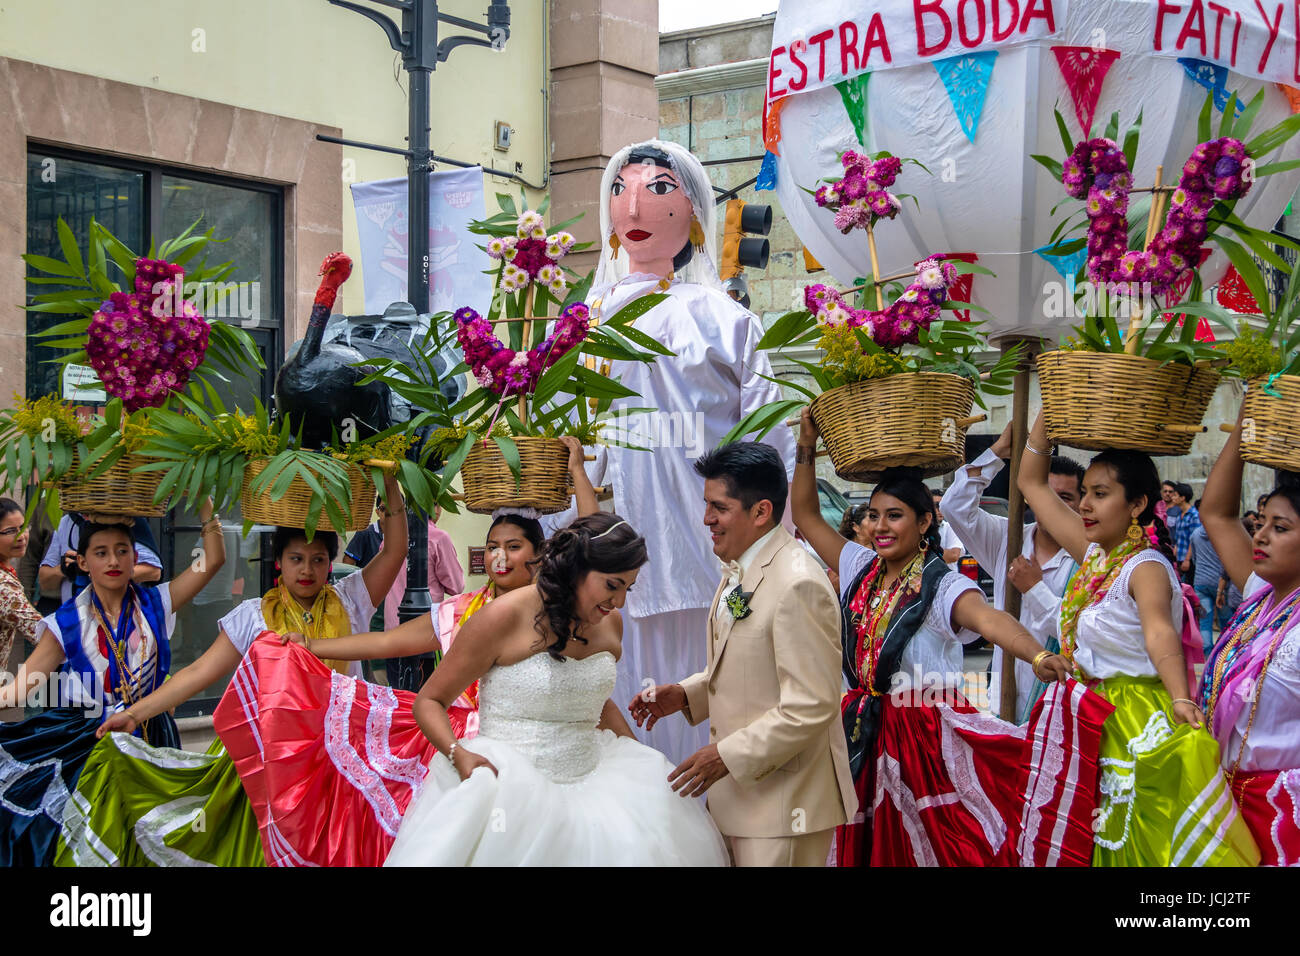 Typical Regional Mexican Wedding Parade know as Calenda de Bodas - Oaxaca, Mexico Stock Photo